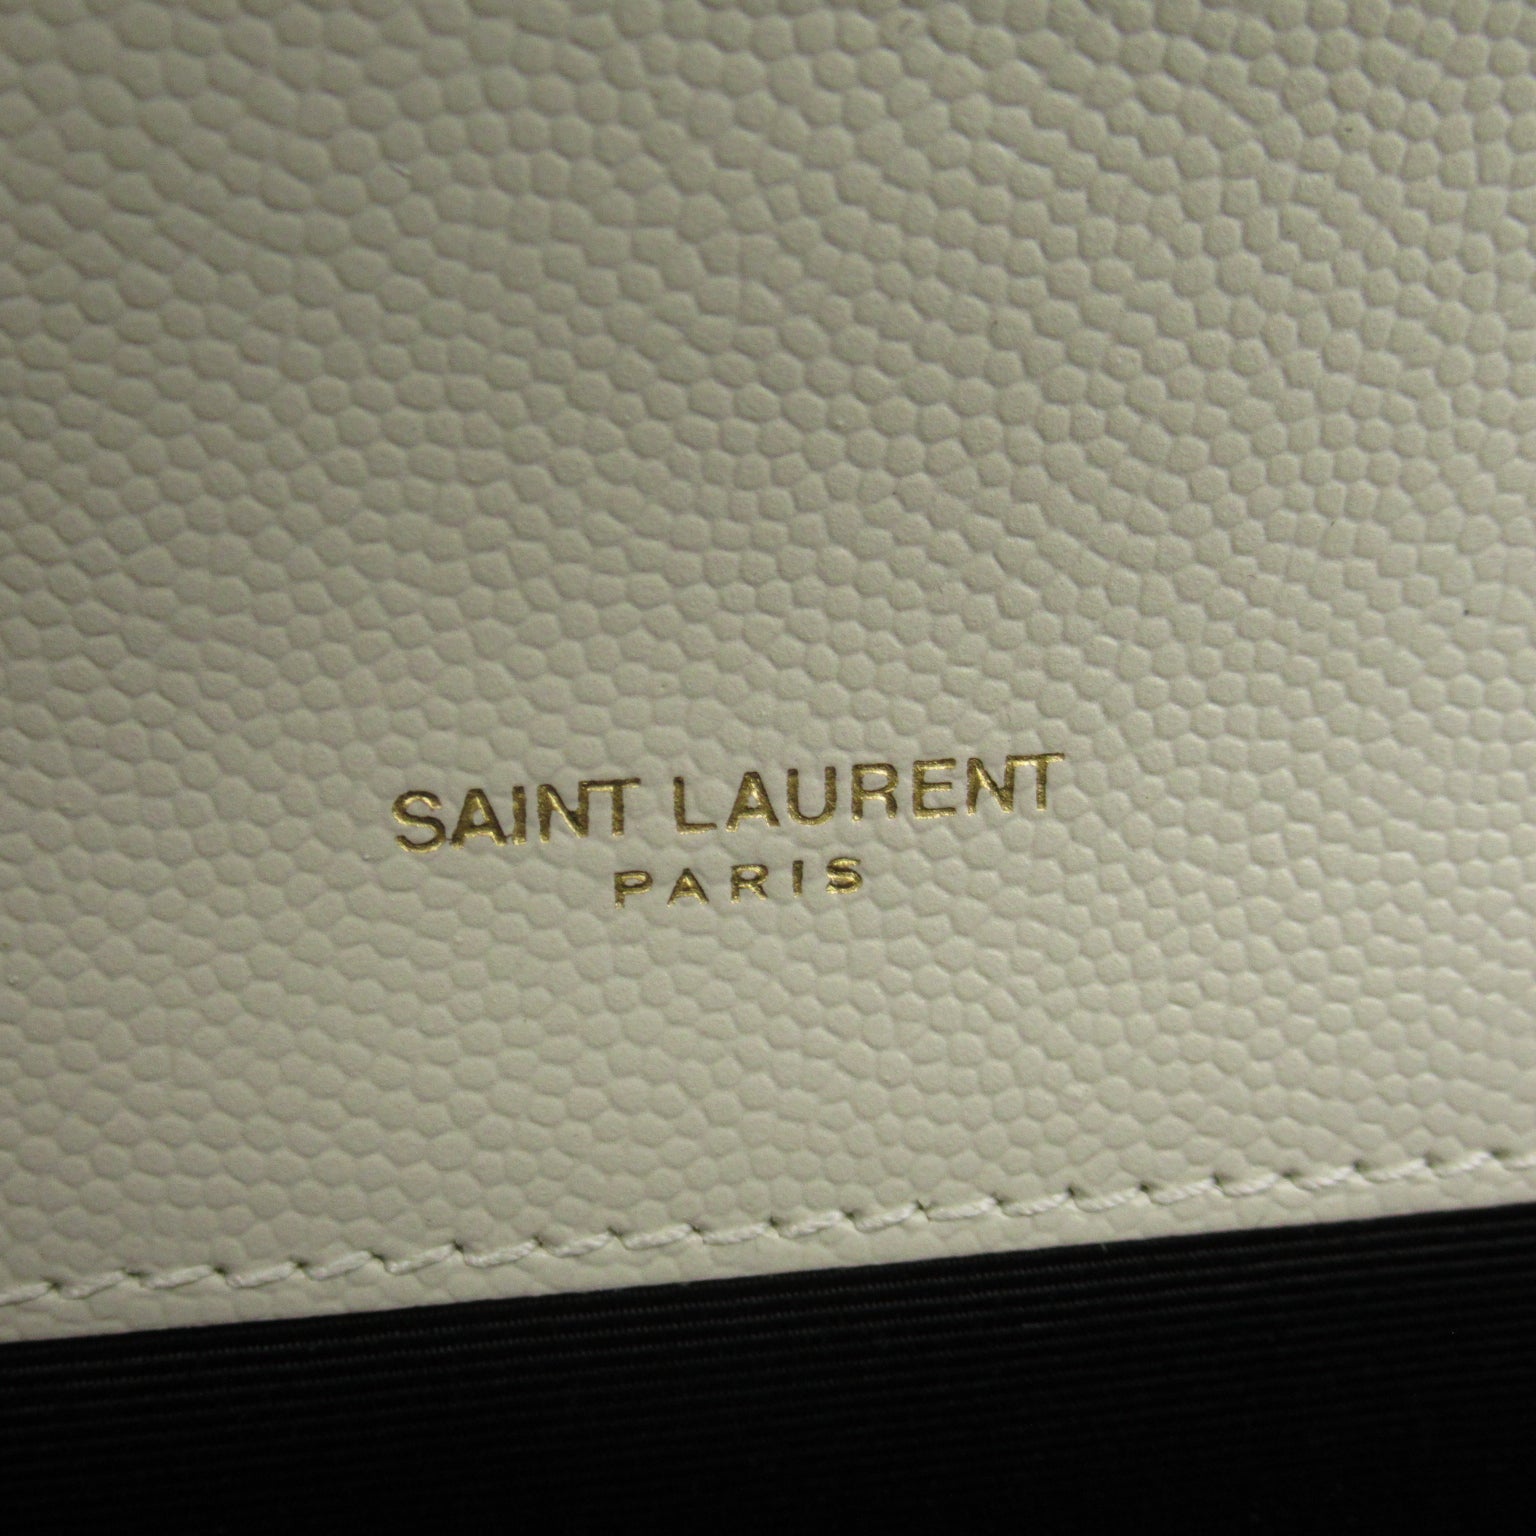 Saint Laurent Chain Shoulder Bag Leather Bag White 600195BOW919207